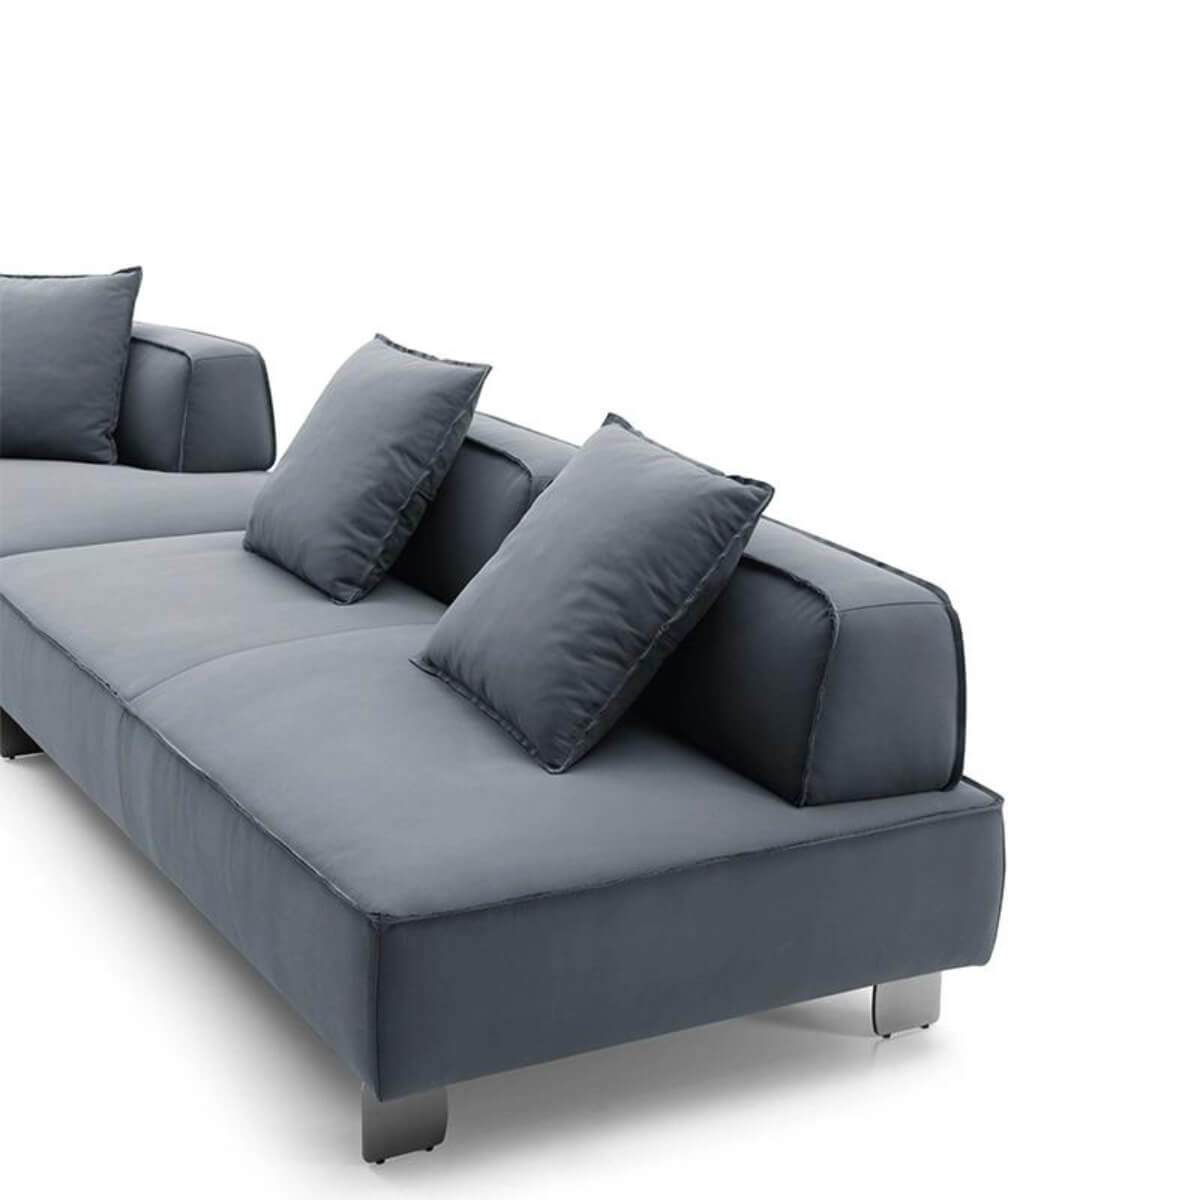 GrandGossamer Luxurious Cotton Linen Sofa